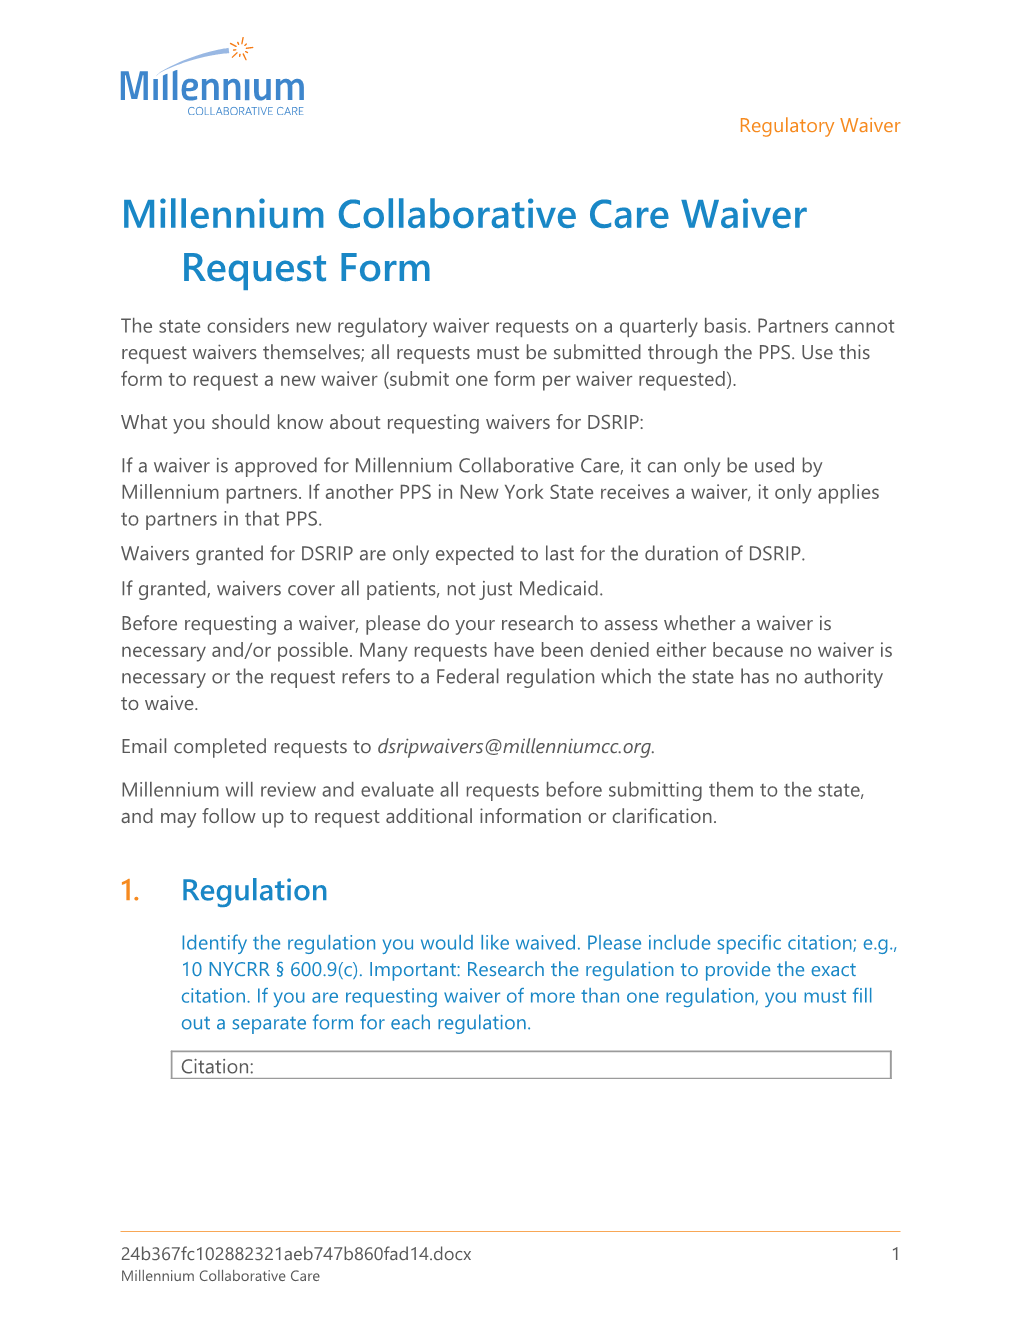 Millennium Collaborative Care Waiver Request Form